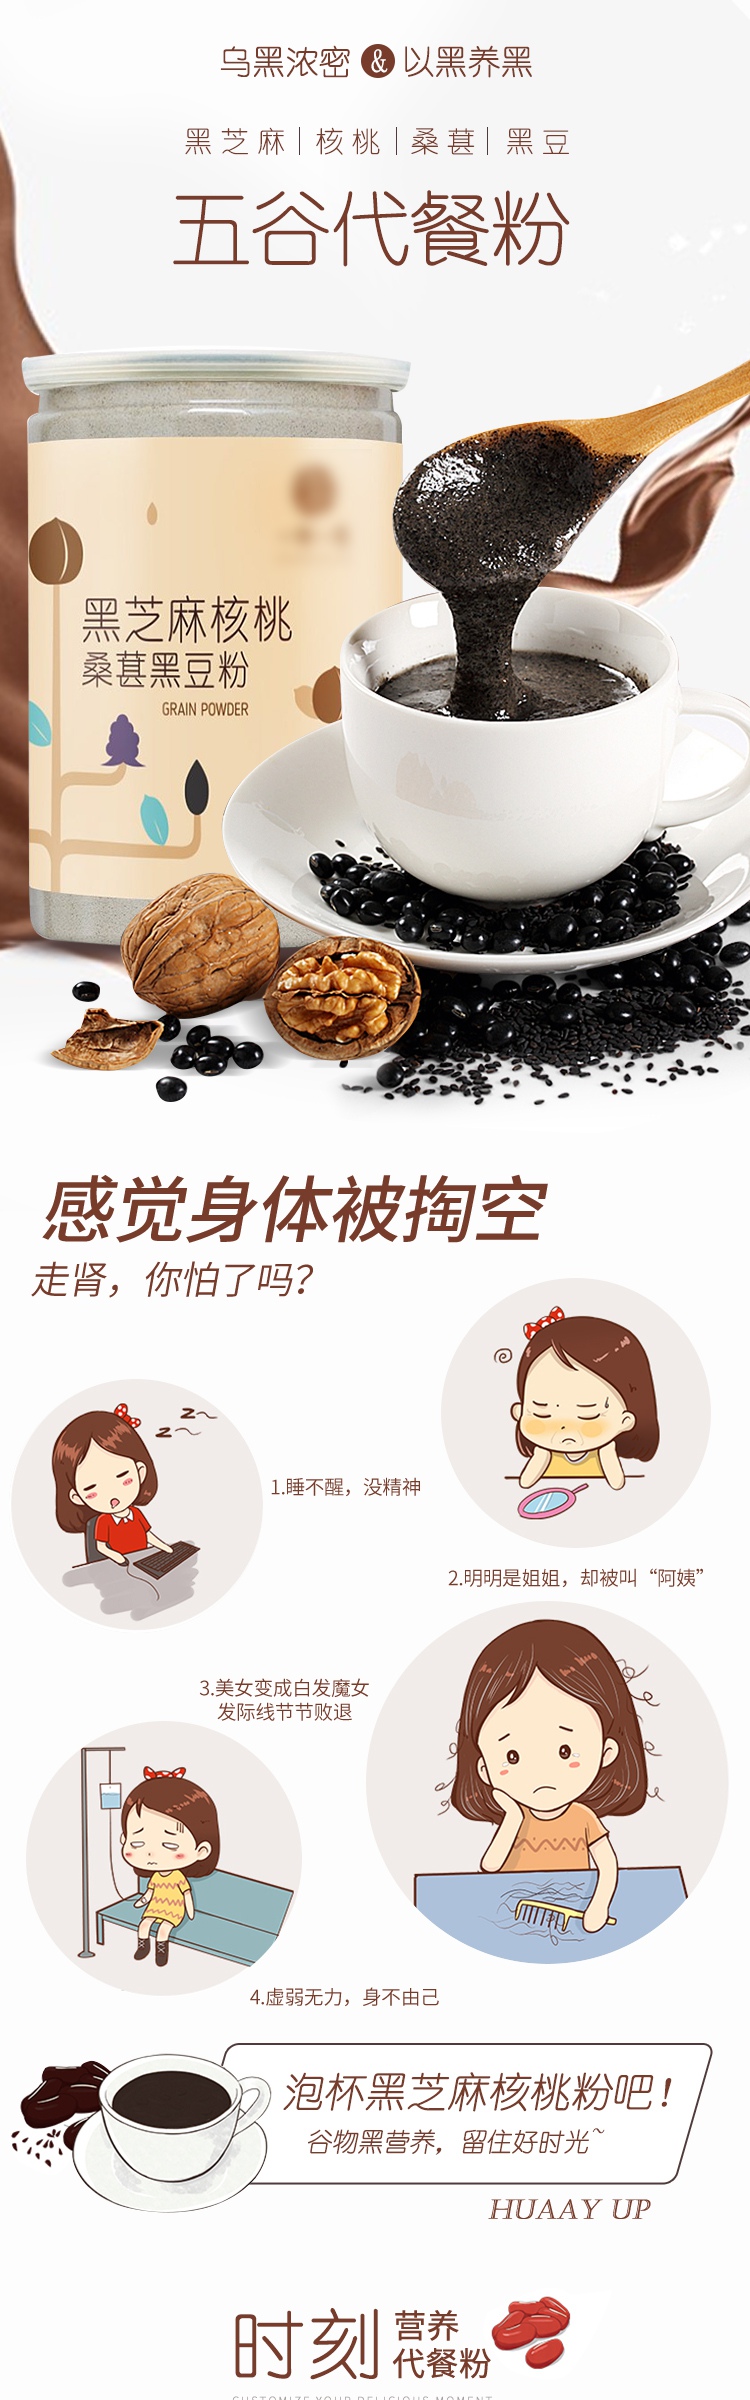 淡雅小清新日常通用五谷代餐粉米稀食品详情页